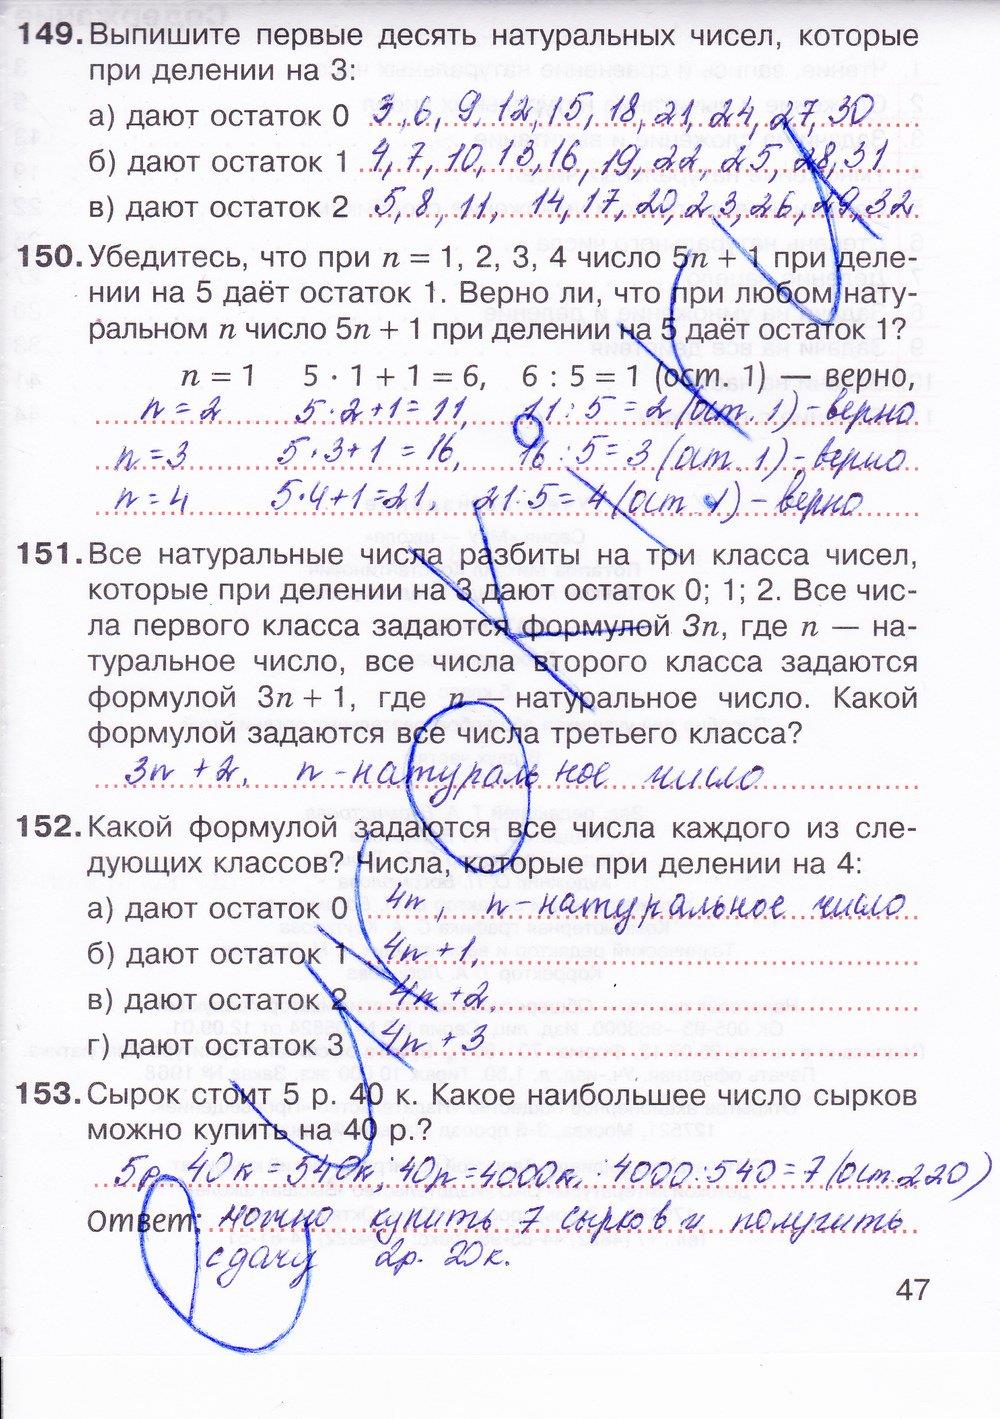 Учебник никольского потапов шевкин 5 класс